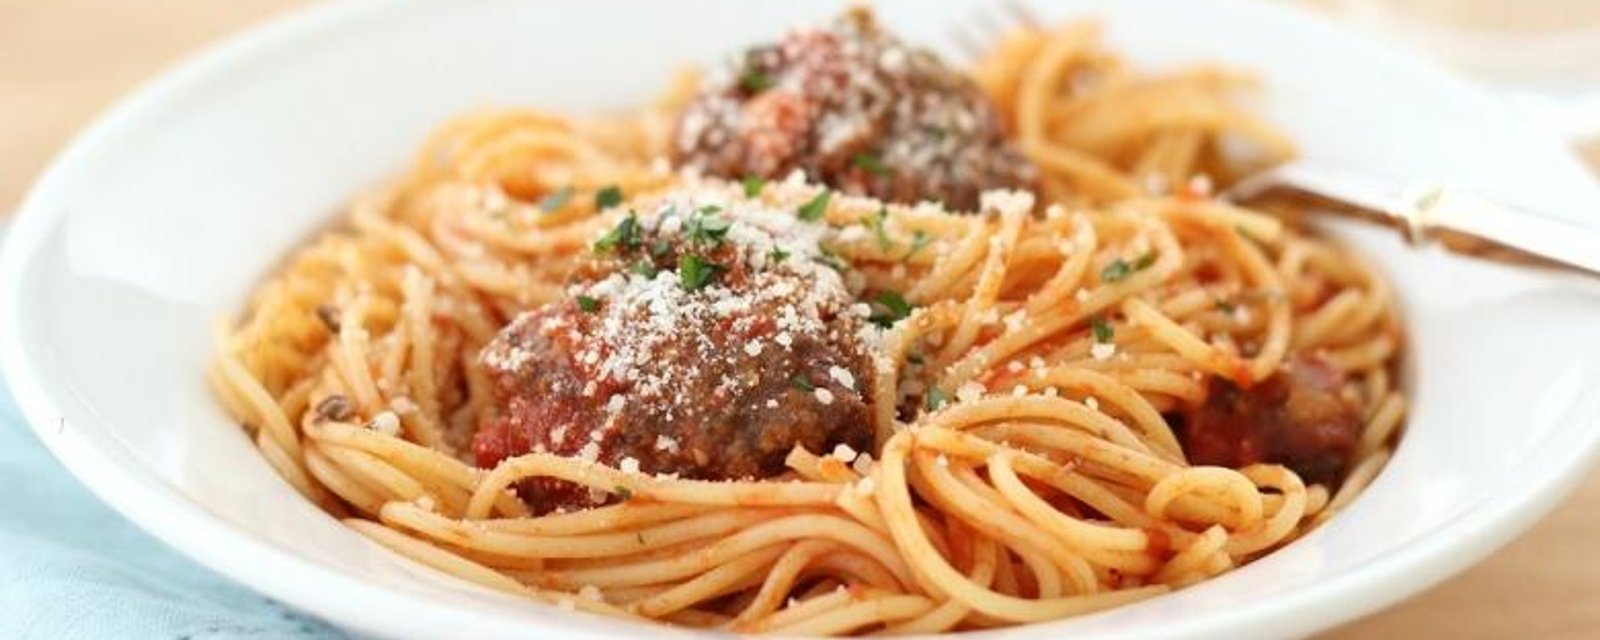 Ajoutez-y une petite dose de viande...Voici le spaghetti aux boulettes de viande